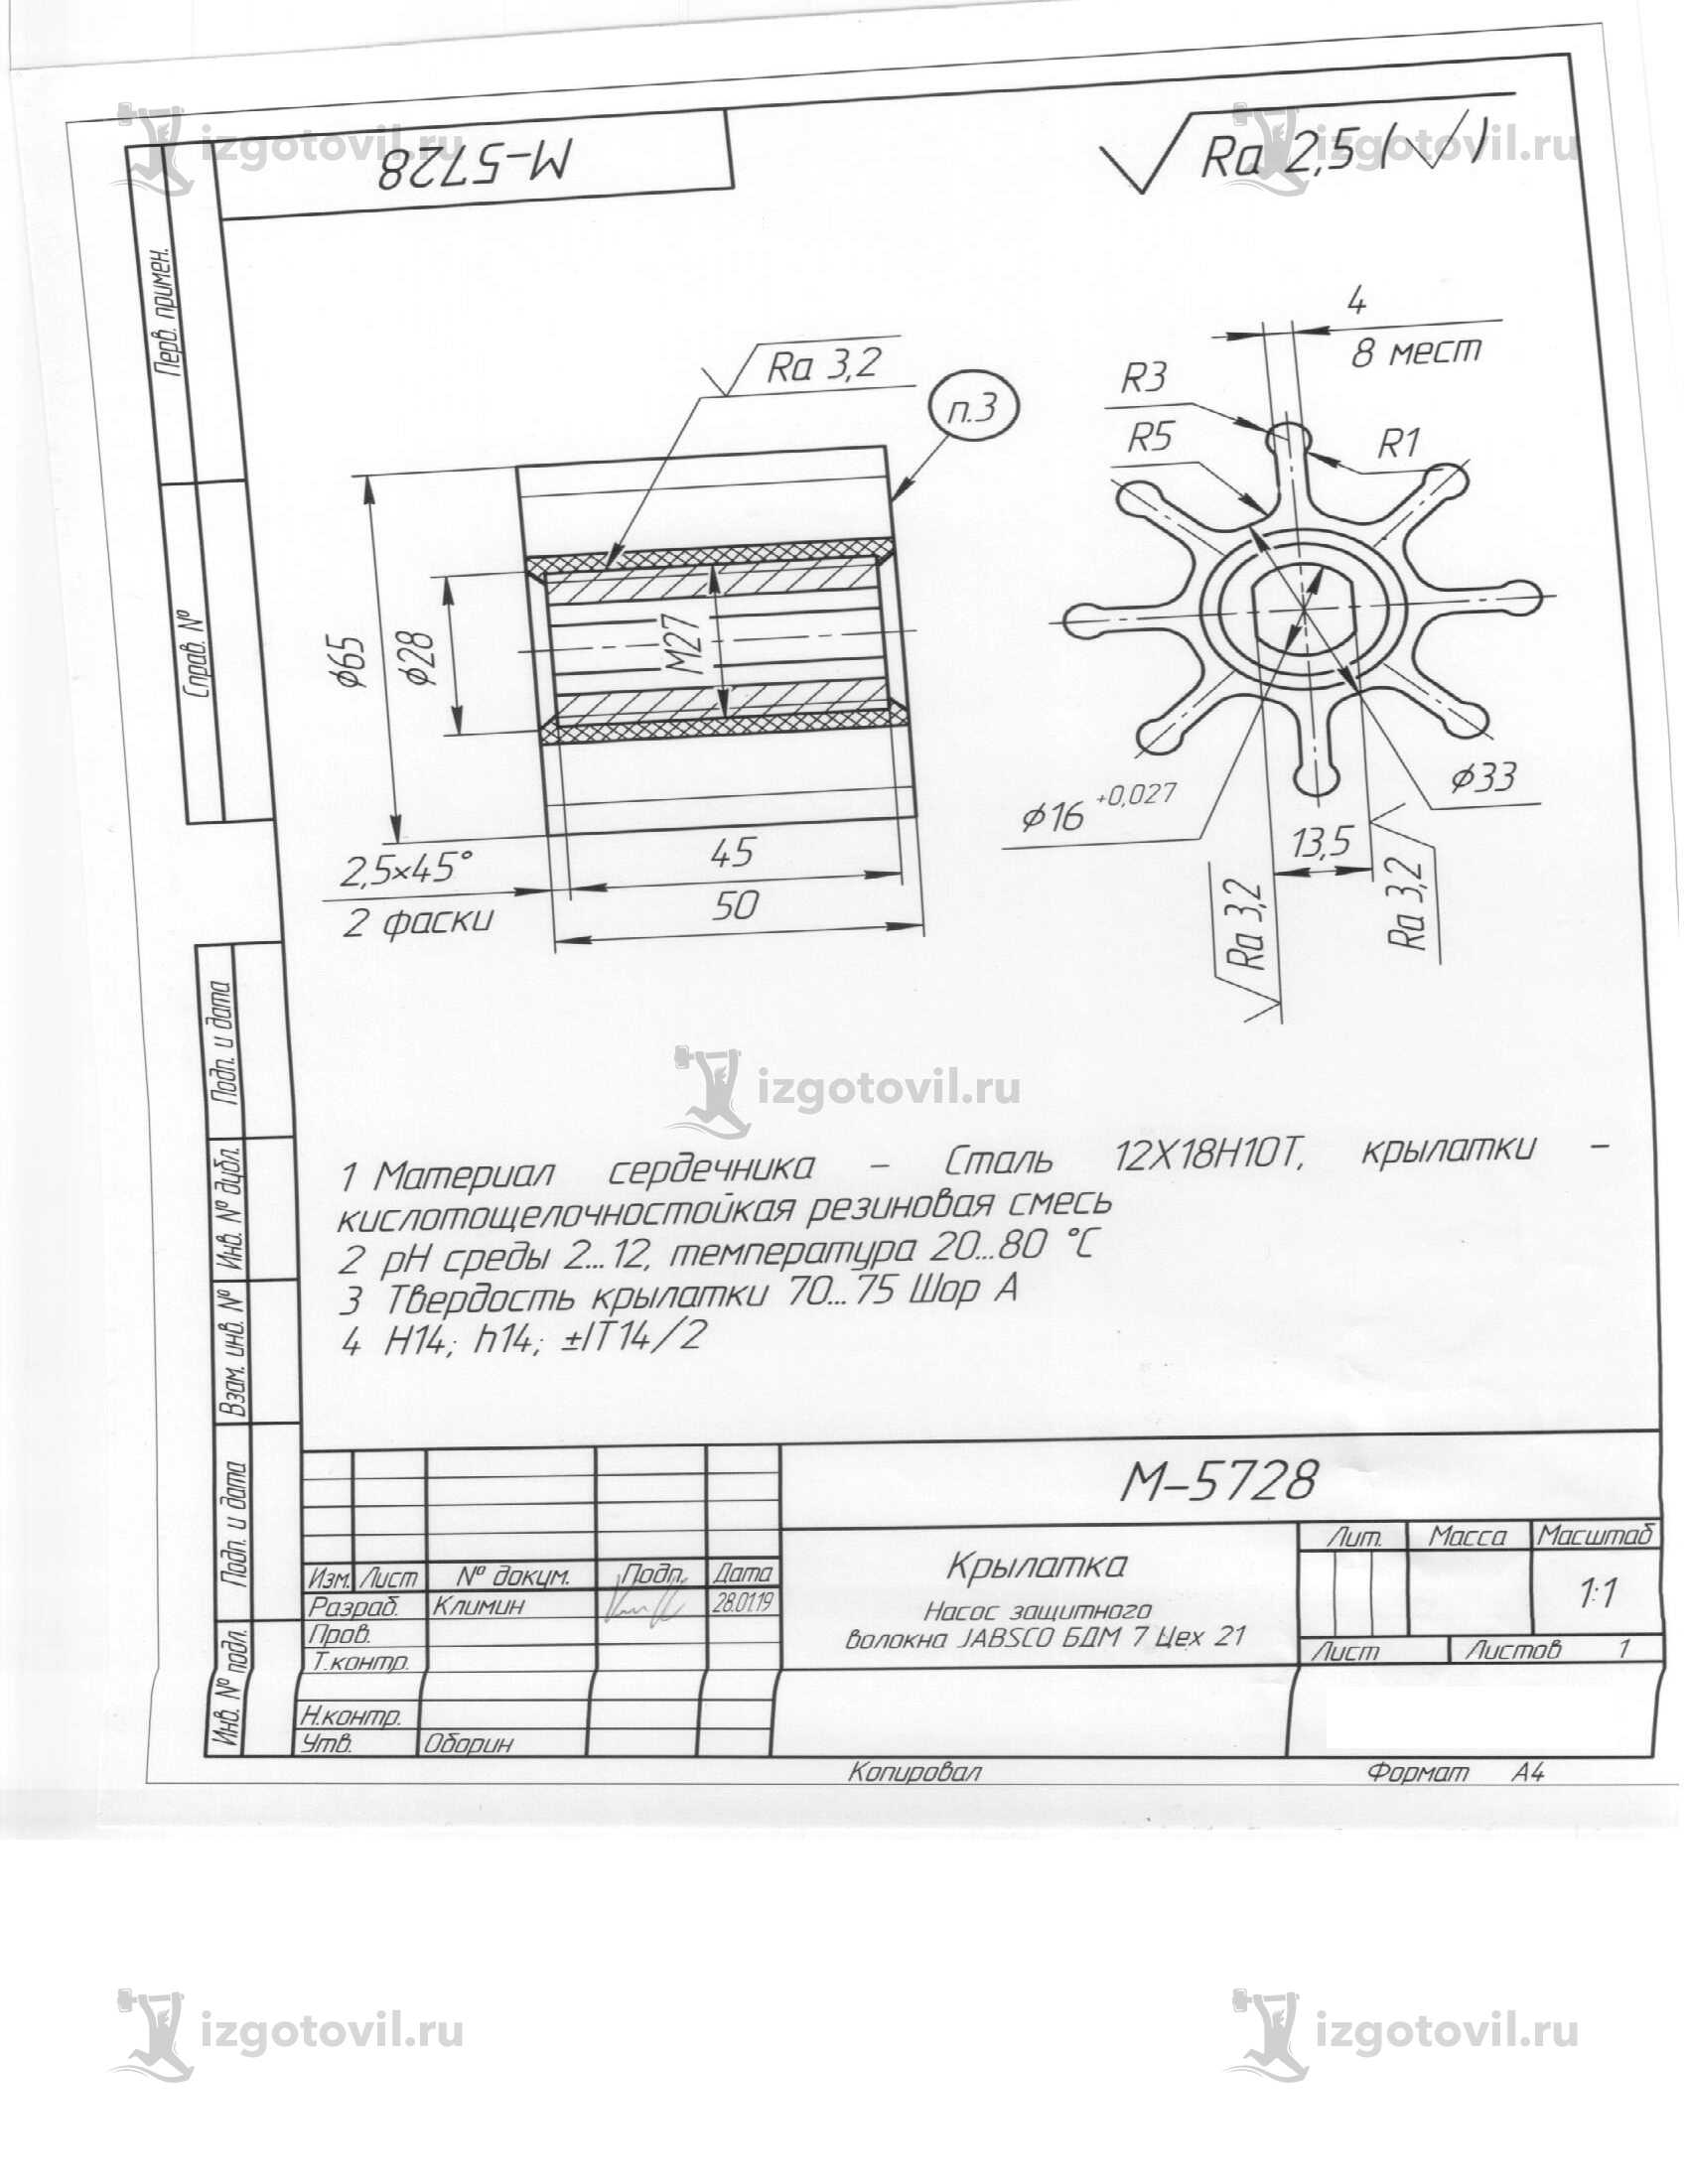 Изготовление деталей оборудования (колесо (крылатка) рабочее насоса JABSCO)